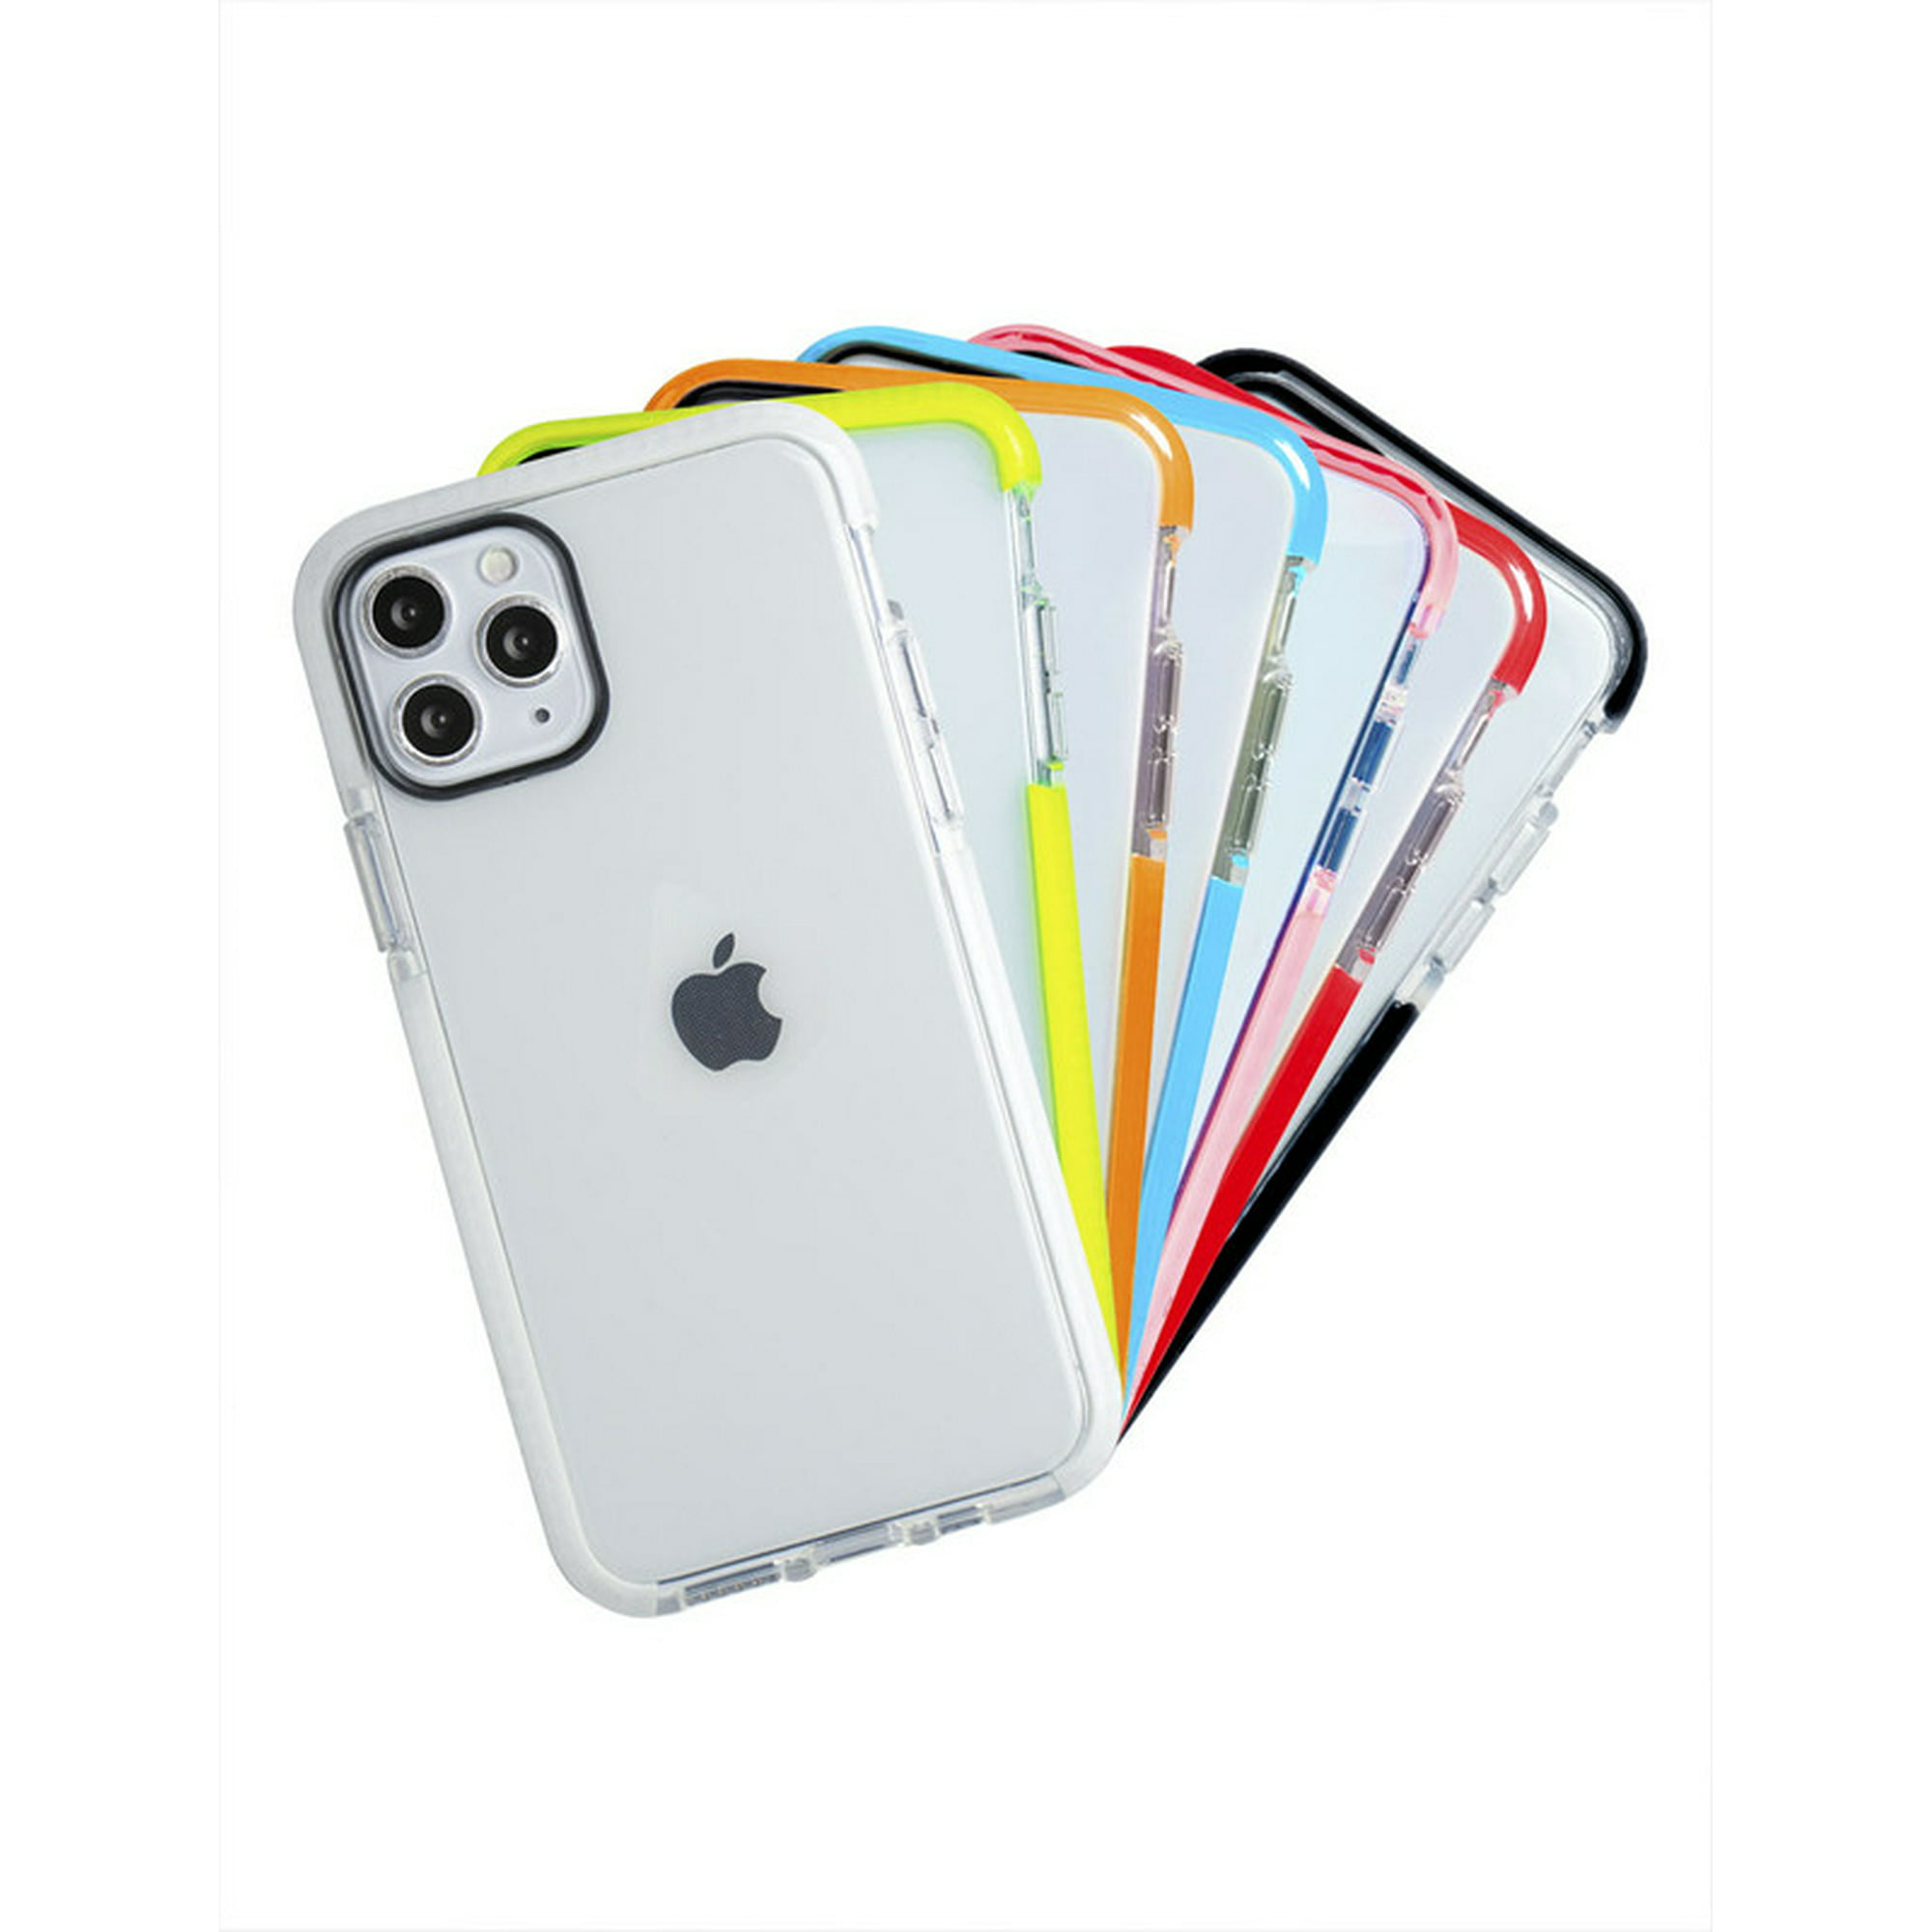 Funda para iphone 11 pro max tecnología ultra impacto color blanco instacase antigolpes uso rudo